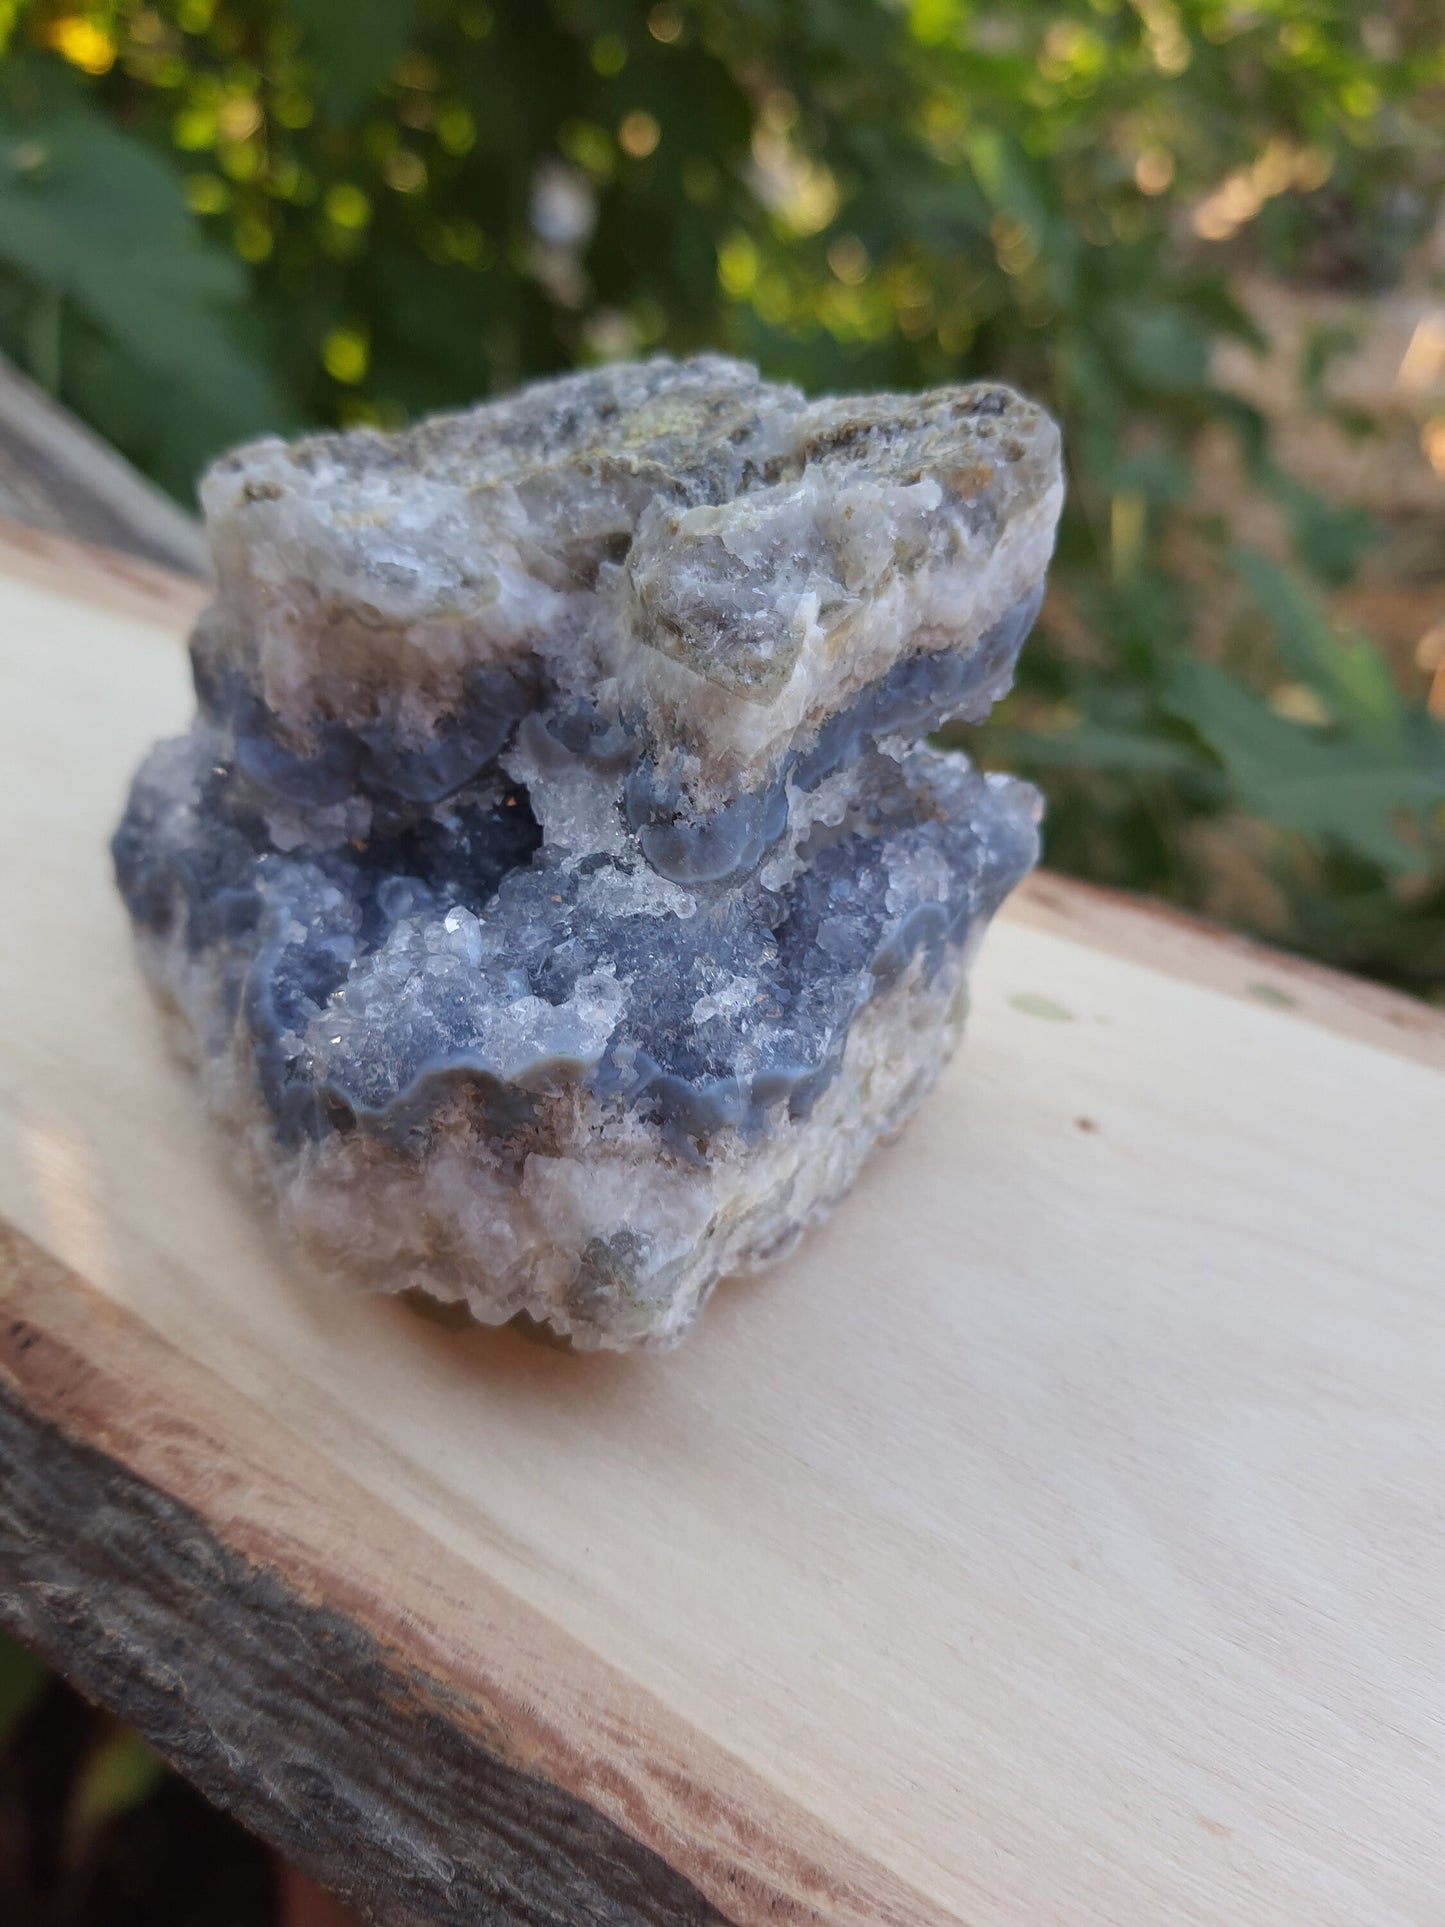 Blue Lace Agate Cluster, 182g Druzy Blue Lace Agate Geode, Sparkly blue Lace Agate, Blue Agate Crystal, Blue Lace Agate, Raw Crystal Cluster